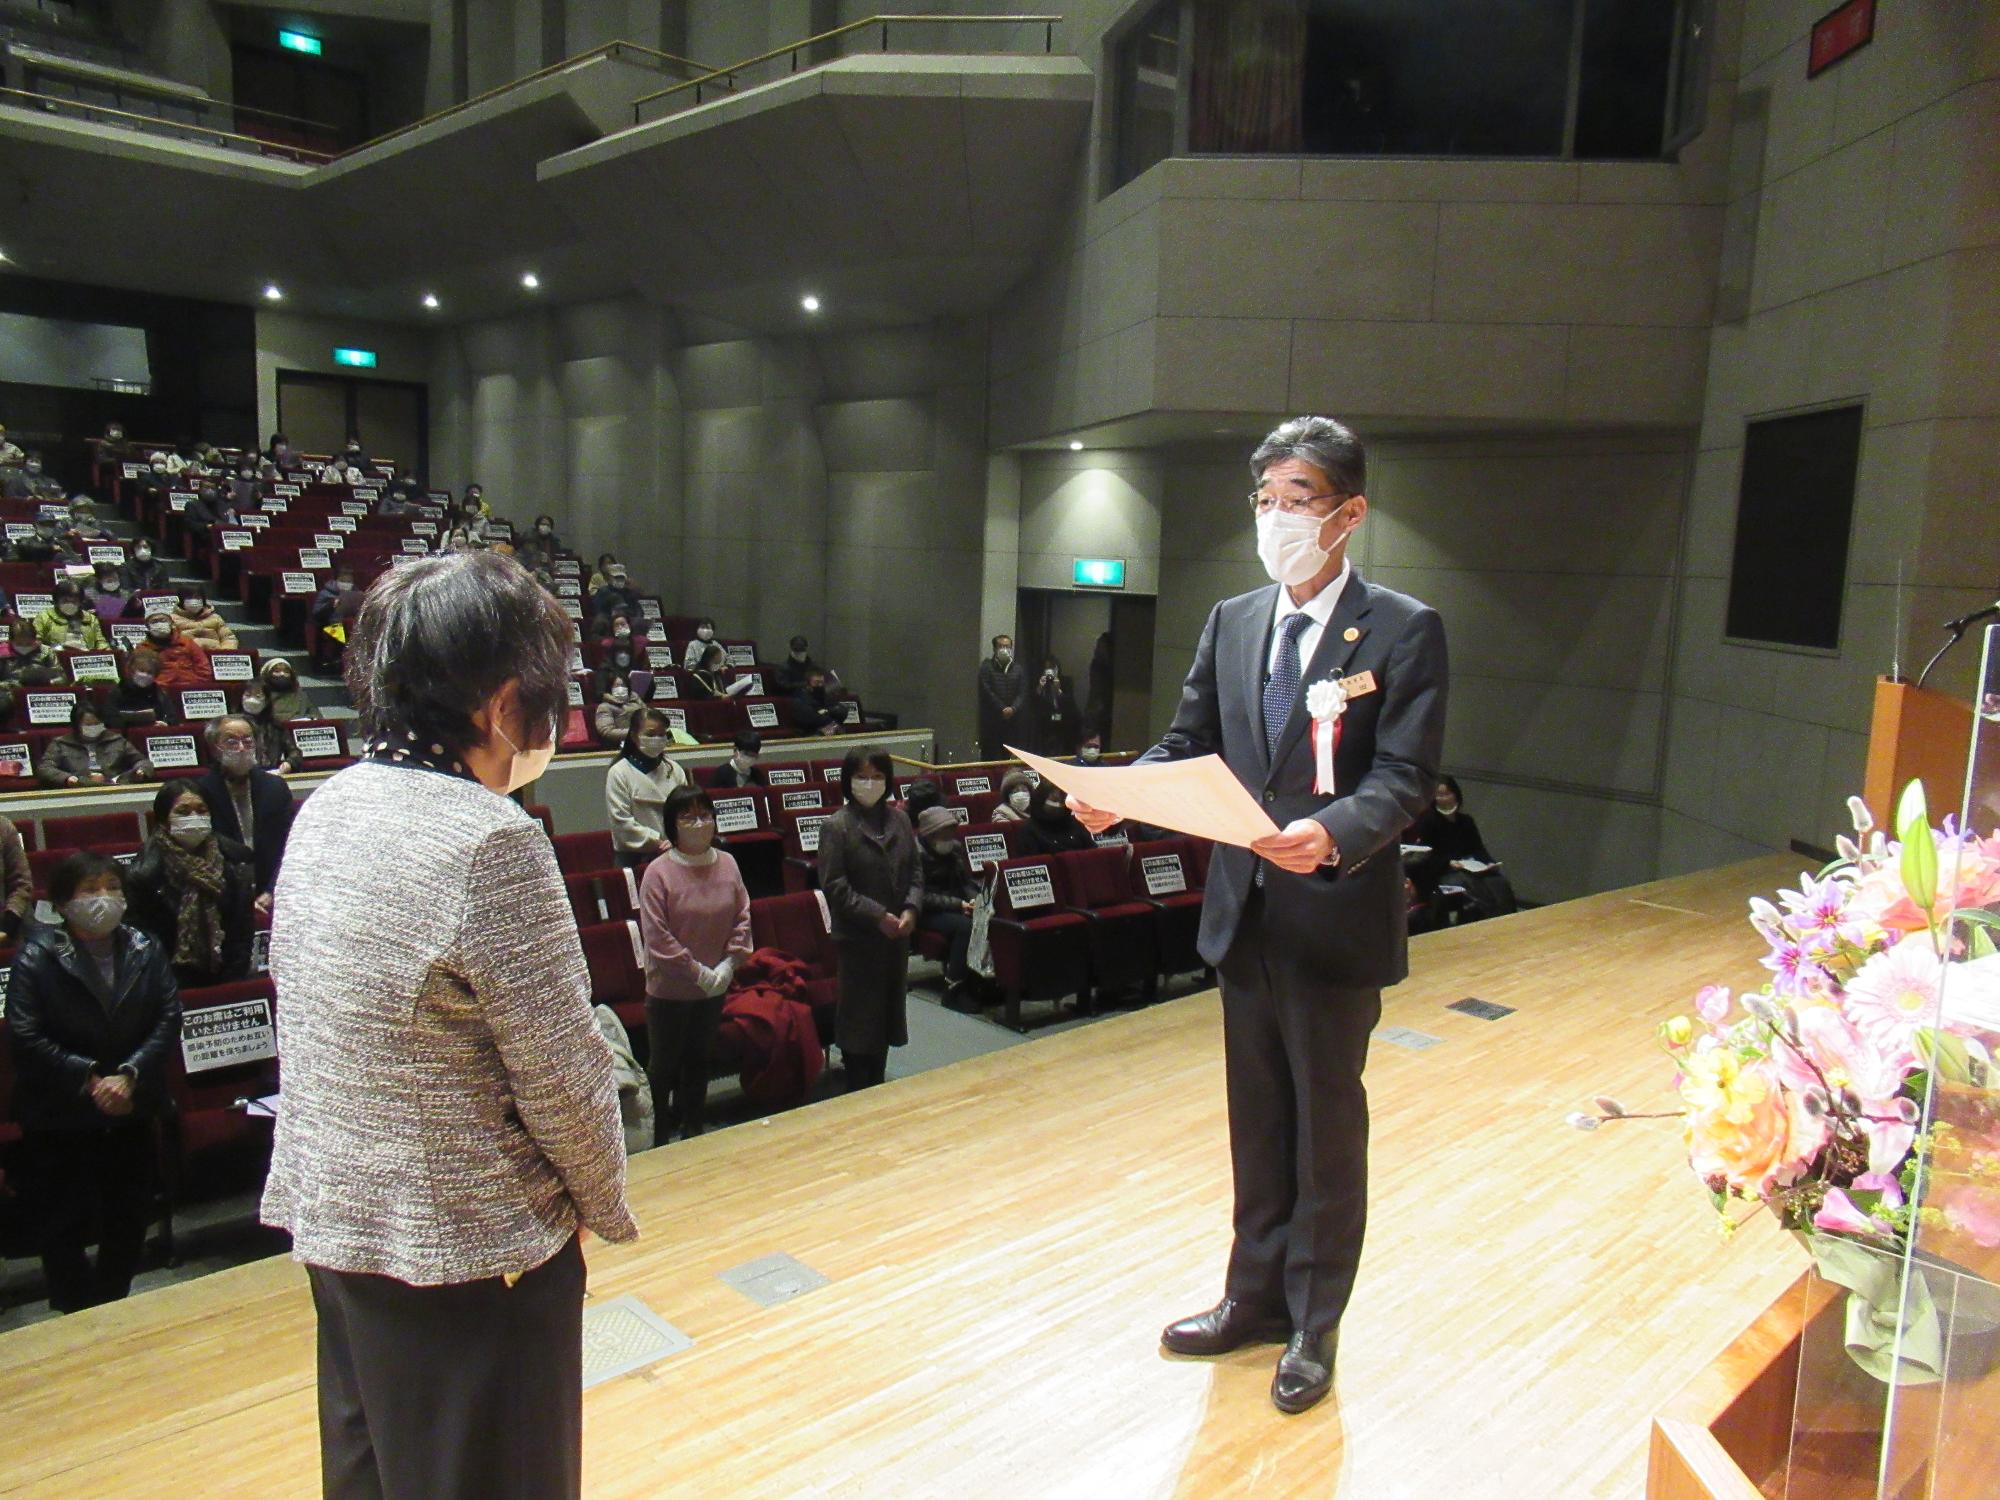 閉講式で宍粟市教育長から修了生を代表して修了証書を受けとる学生の写真